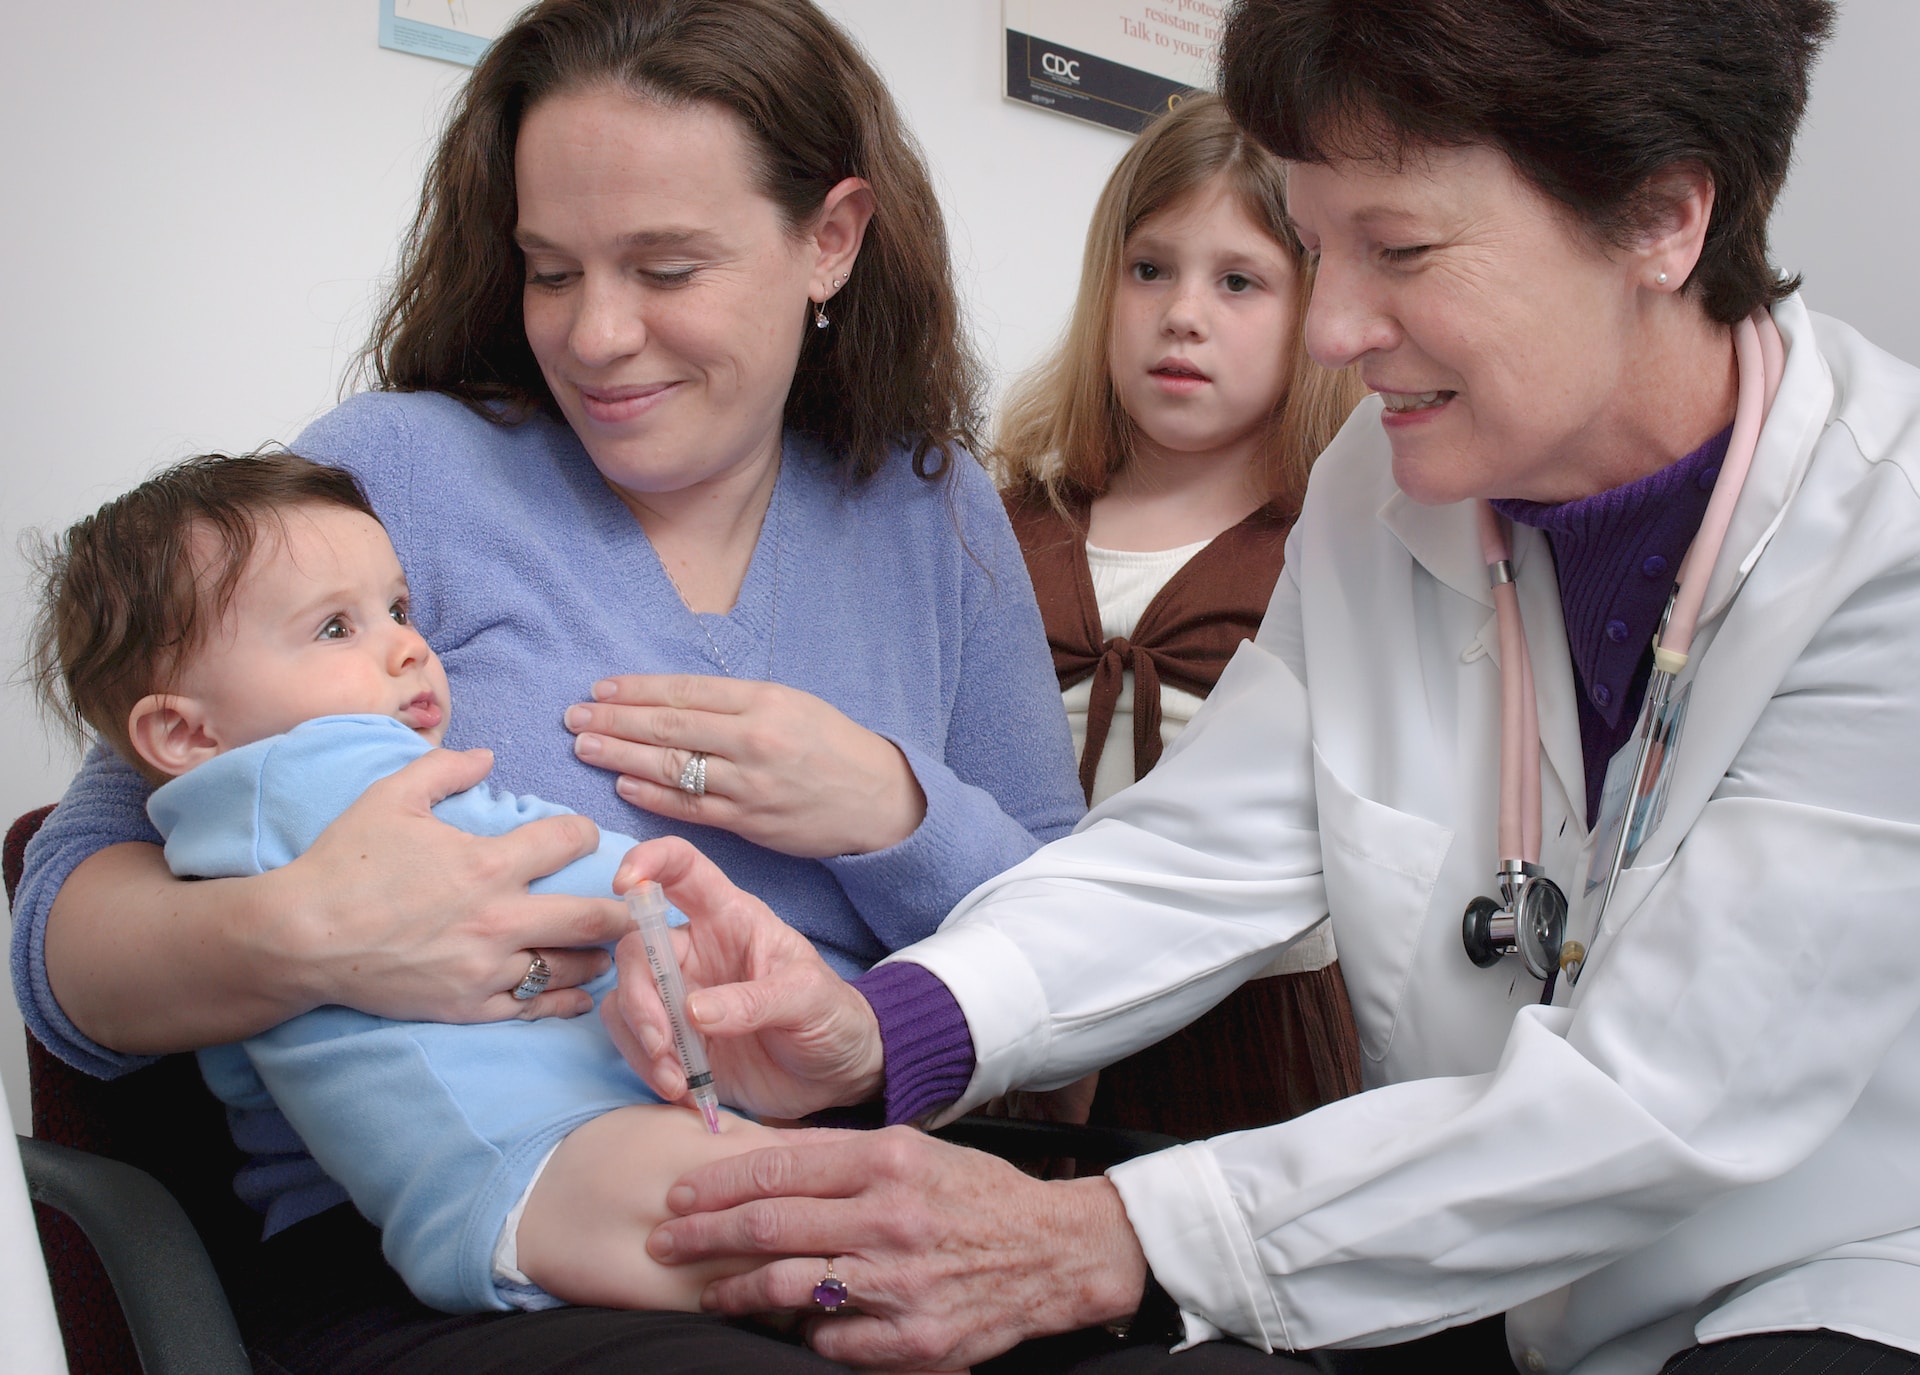 jakie sa najczęściej zgłaszane problemy zdrowotne dzieci na wizycie u pediatry